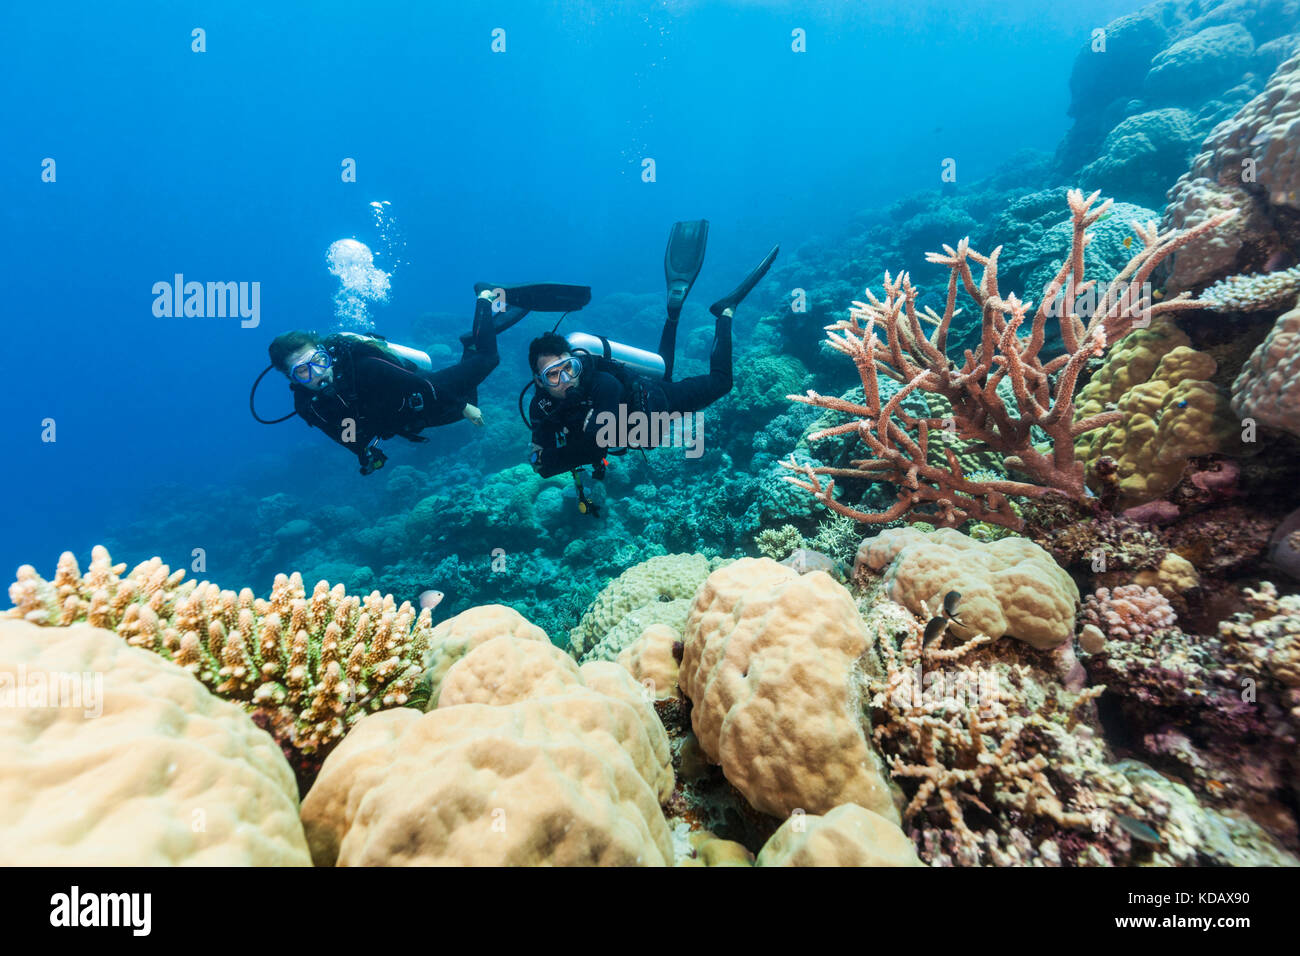 Les plongeurs à la découverte des formations de corail d'Agincourt Reef, Great Barrier Reef Marine Park, Port Douglas, Queensland, Australie Banque D'Images